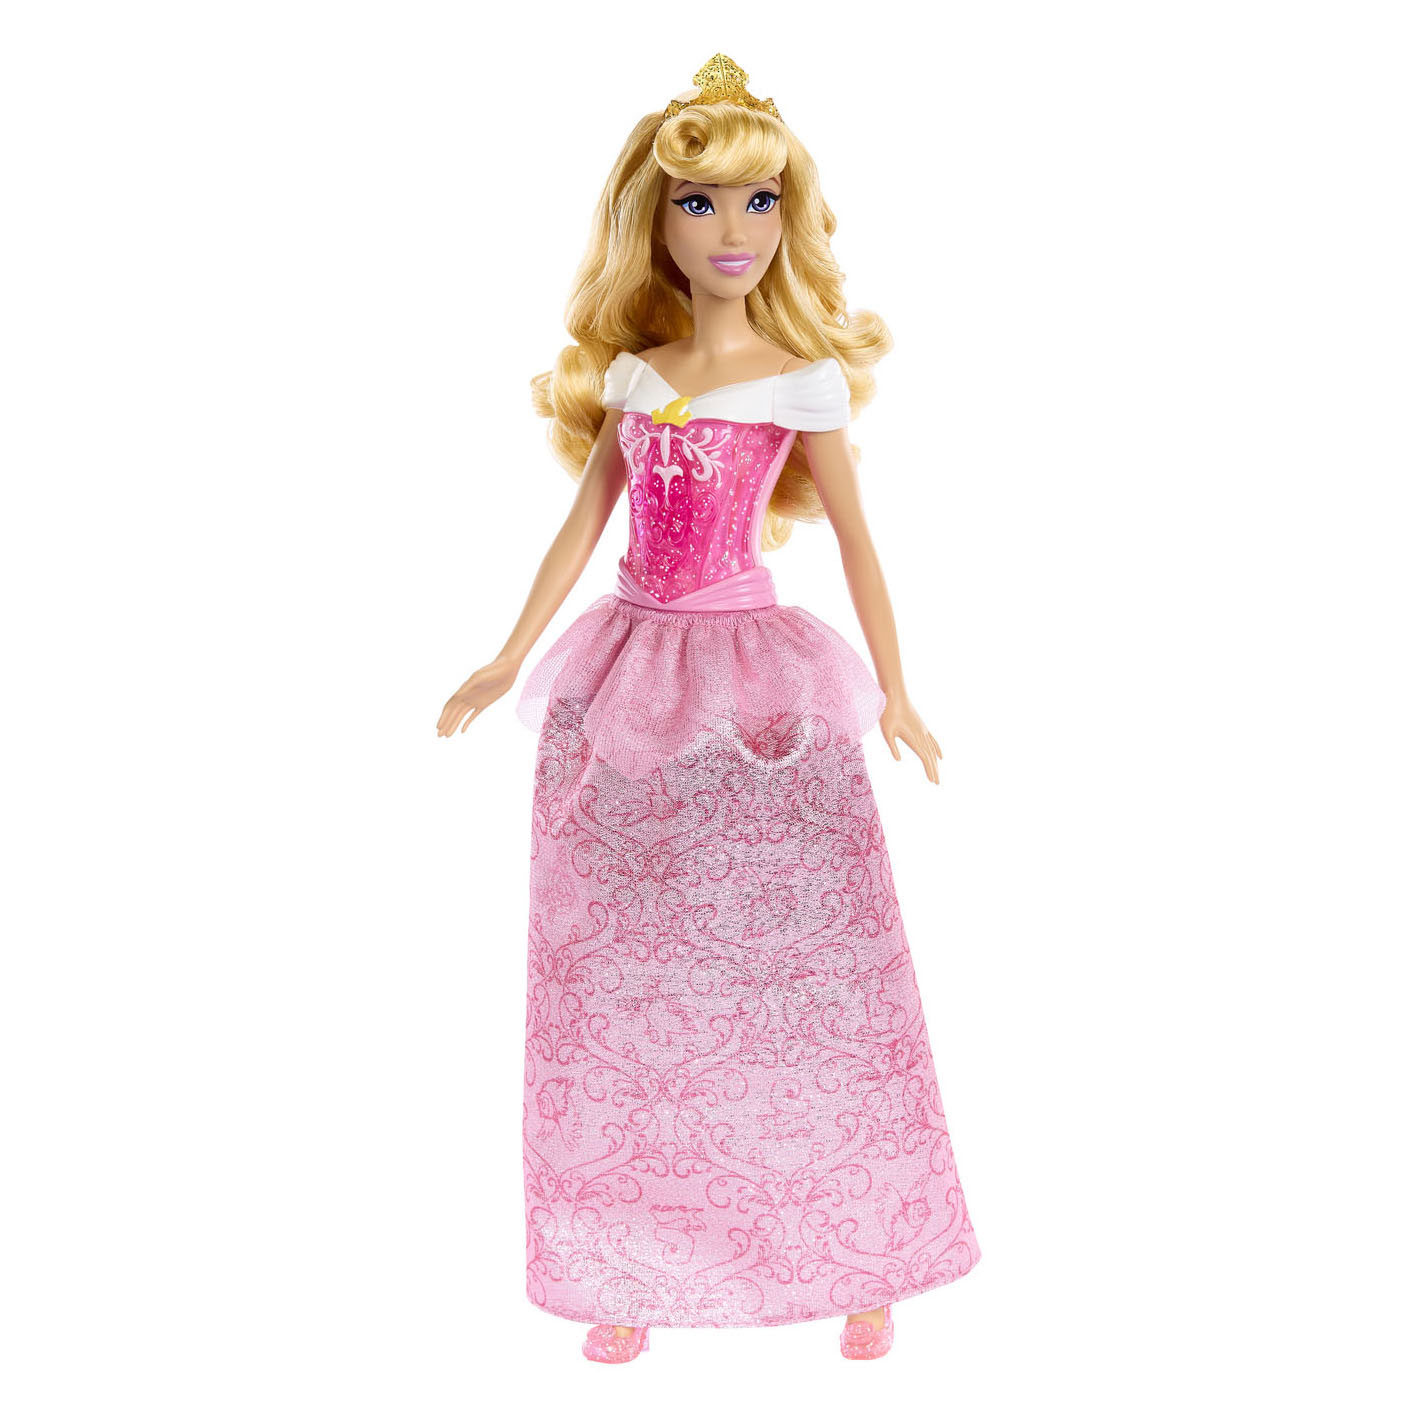 Disney Prinses Aurora Puppe